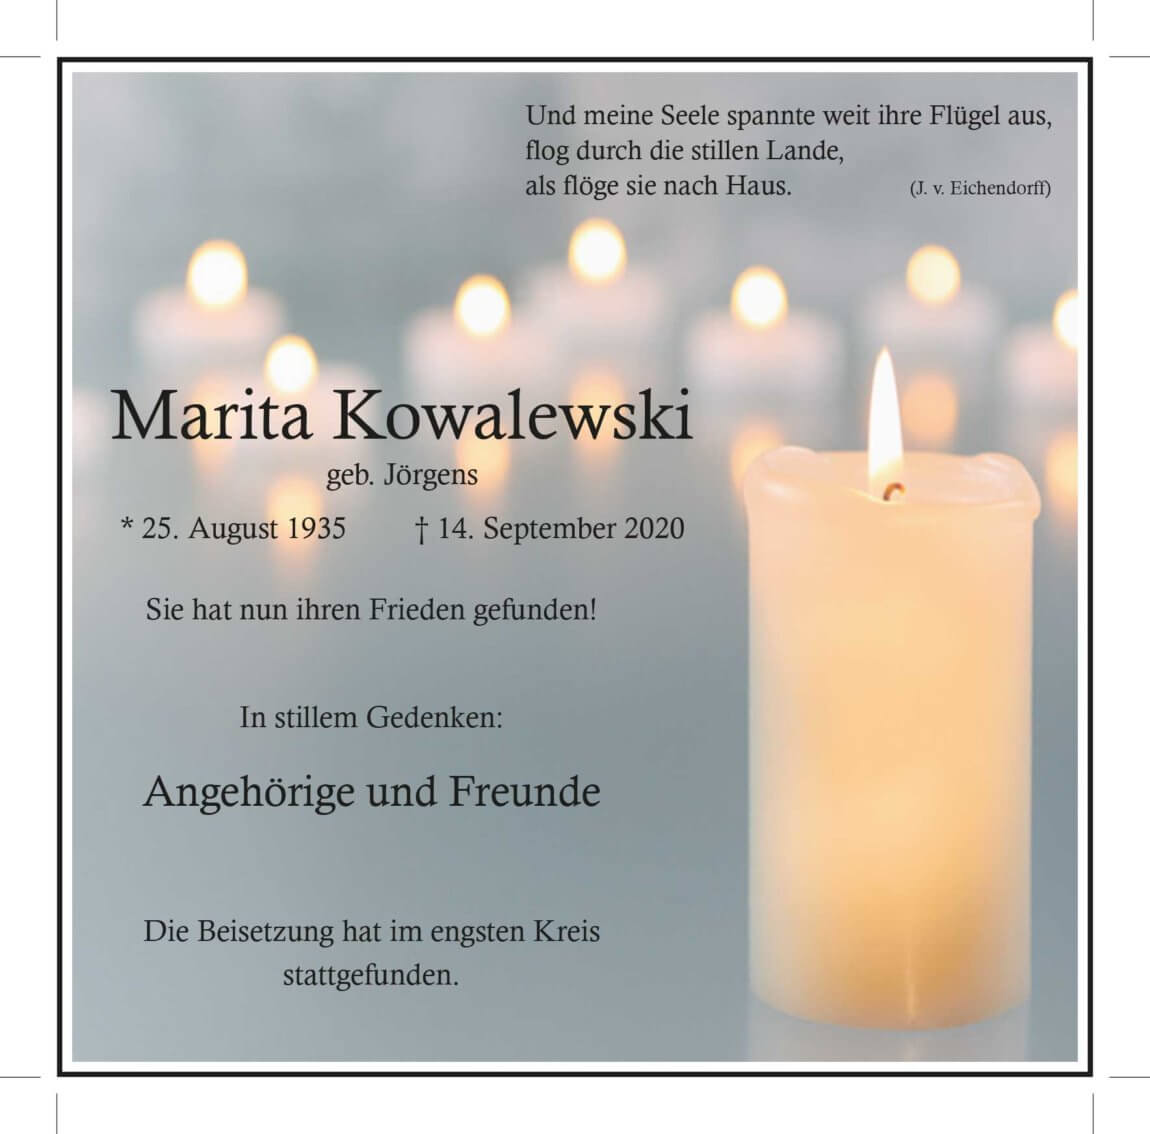 17.10.2020_Kowalewski-Marita.jpg